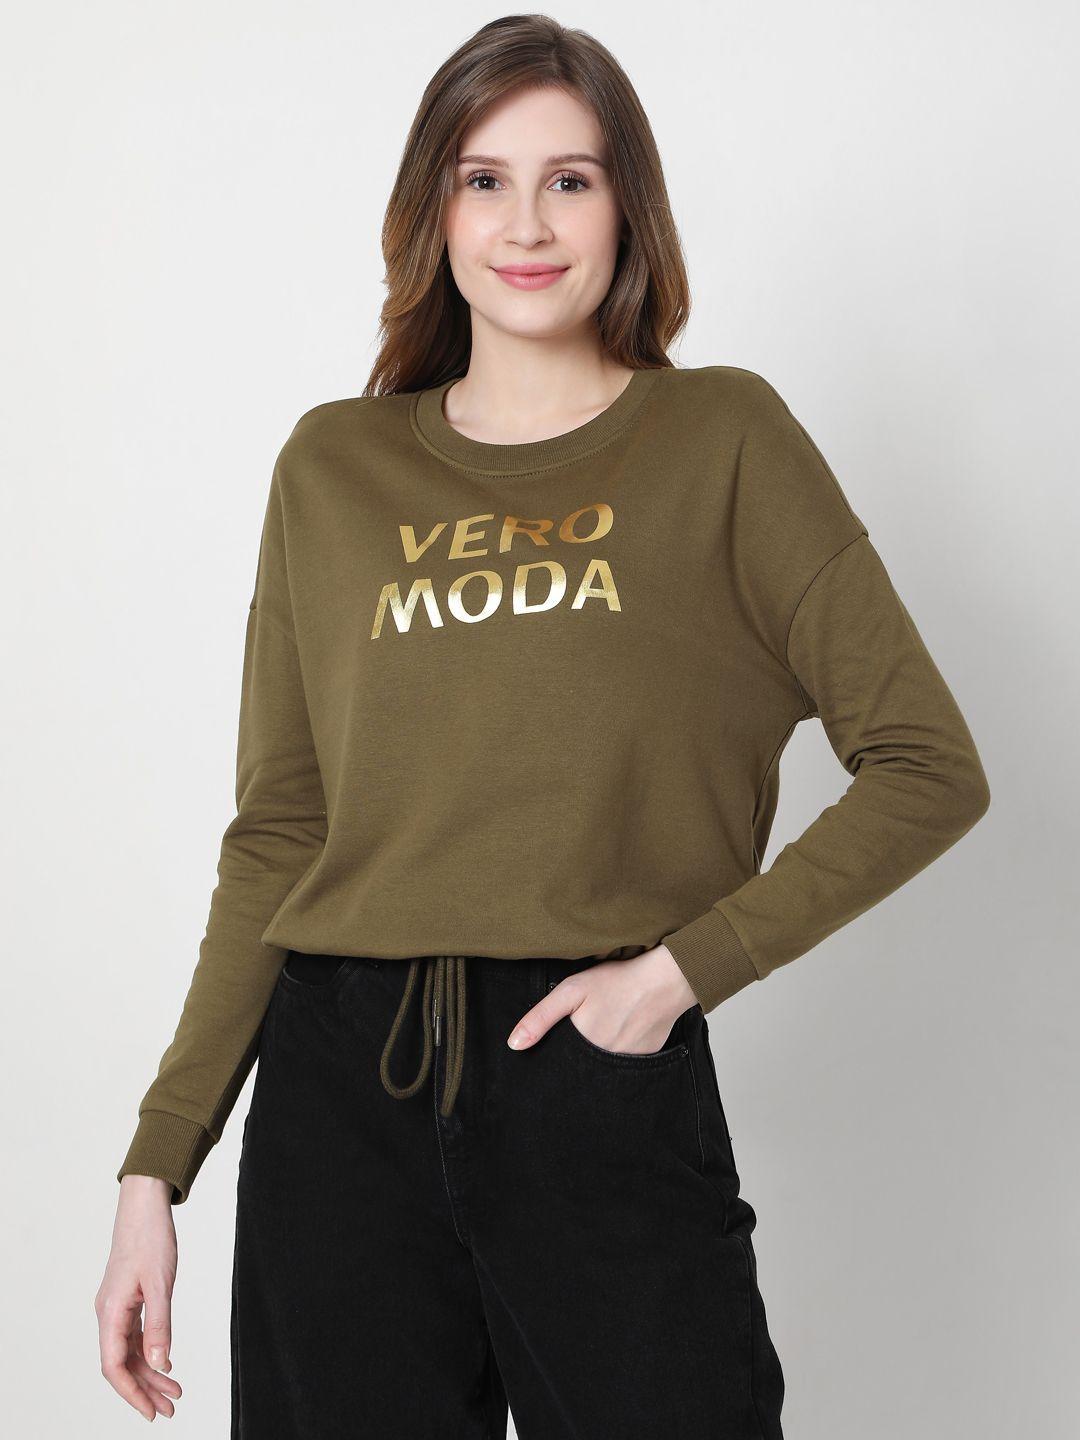 vero moda women green logo printed sweatshirt